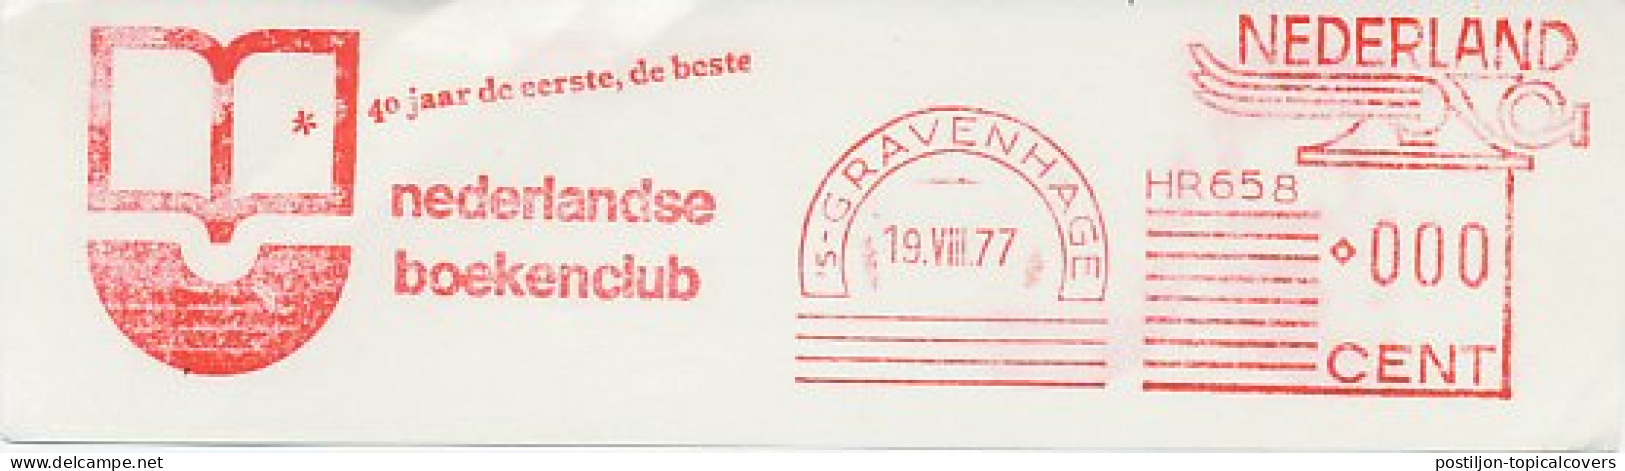 Meter Cut Netherlands 1977 Dutch Book Club - Unclassified